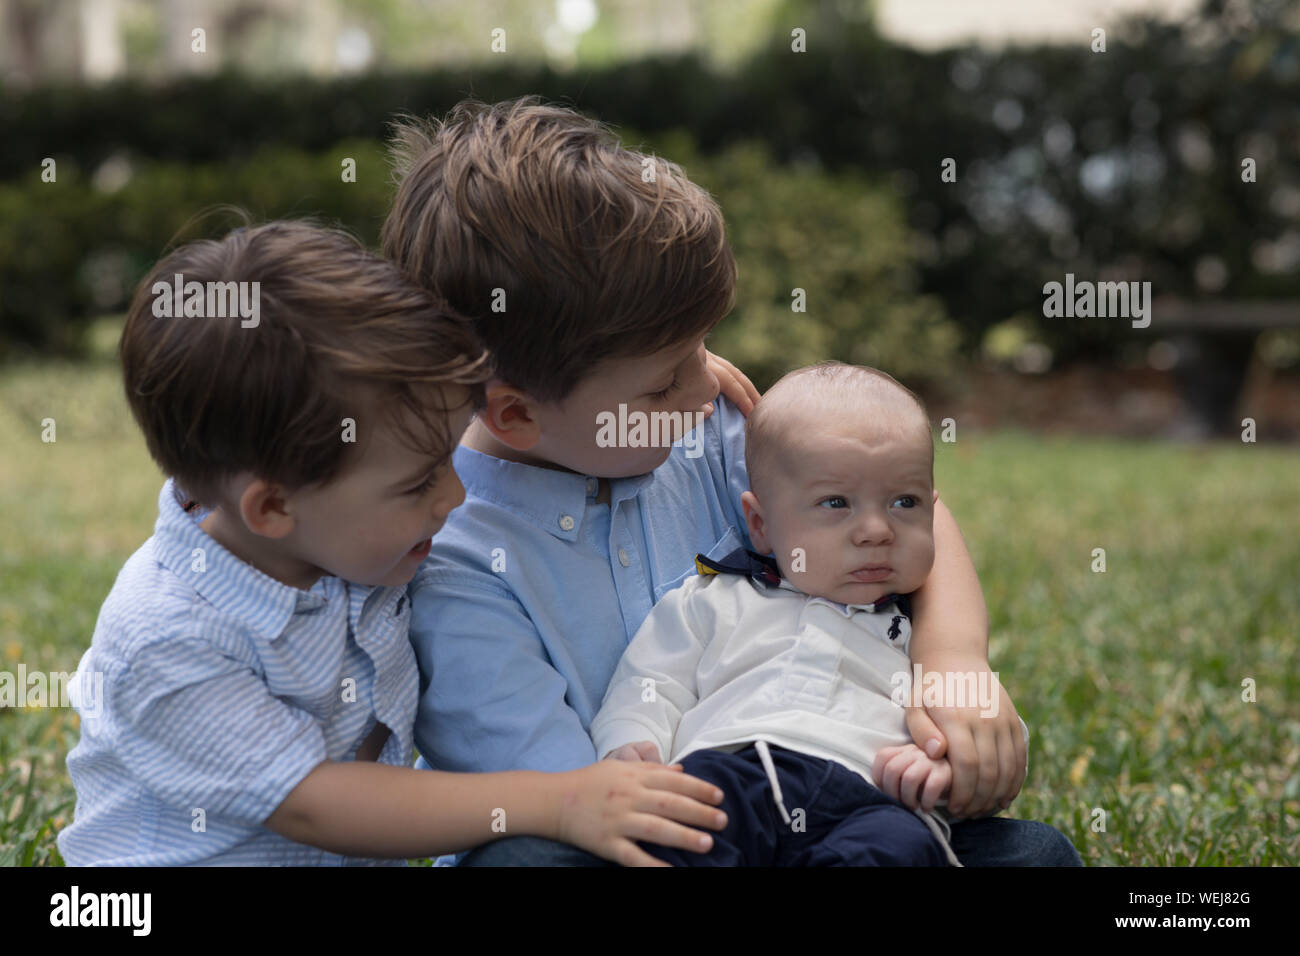 Dos niños, de 4 años y 2 año de edad, sosteniendo su hermanito en un parque Foto de stock